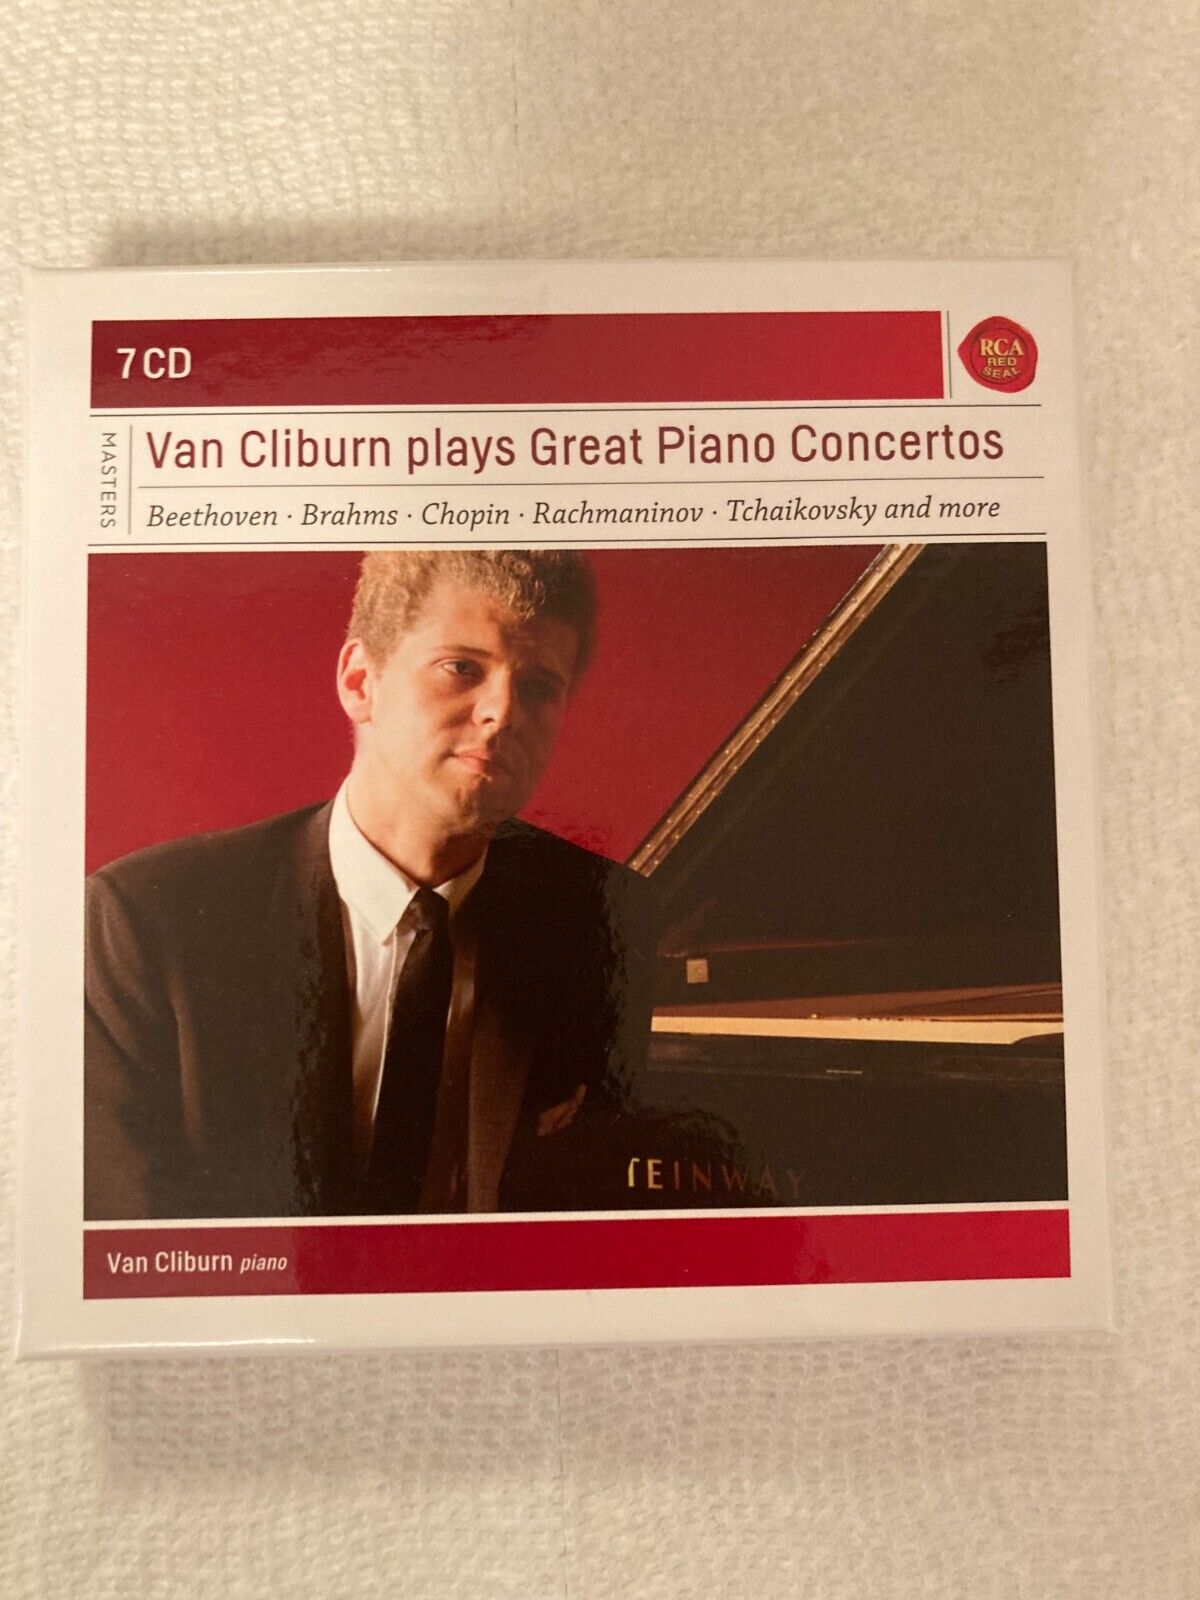 Van Cliburn plays Great Piano Concertos - 7 CD set (RCA - 88697742852) (2010)